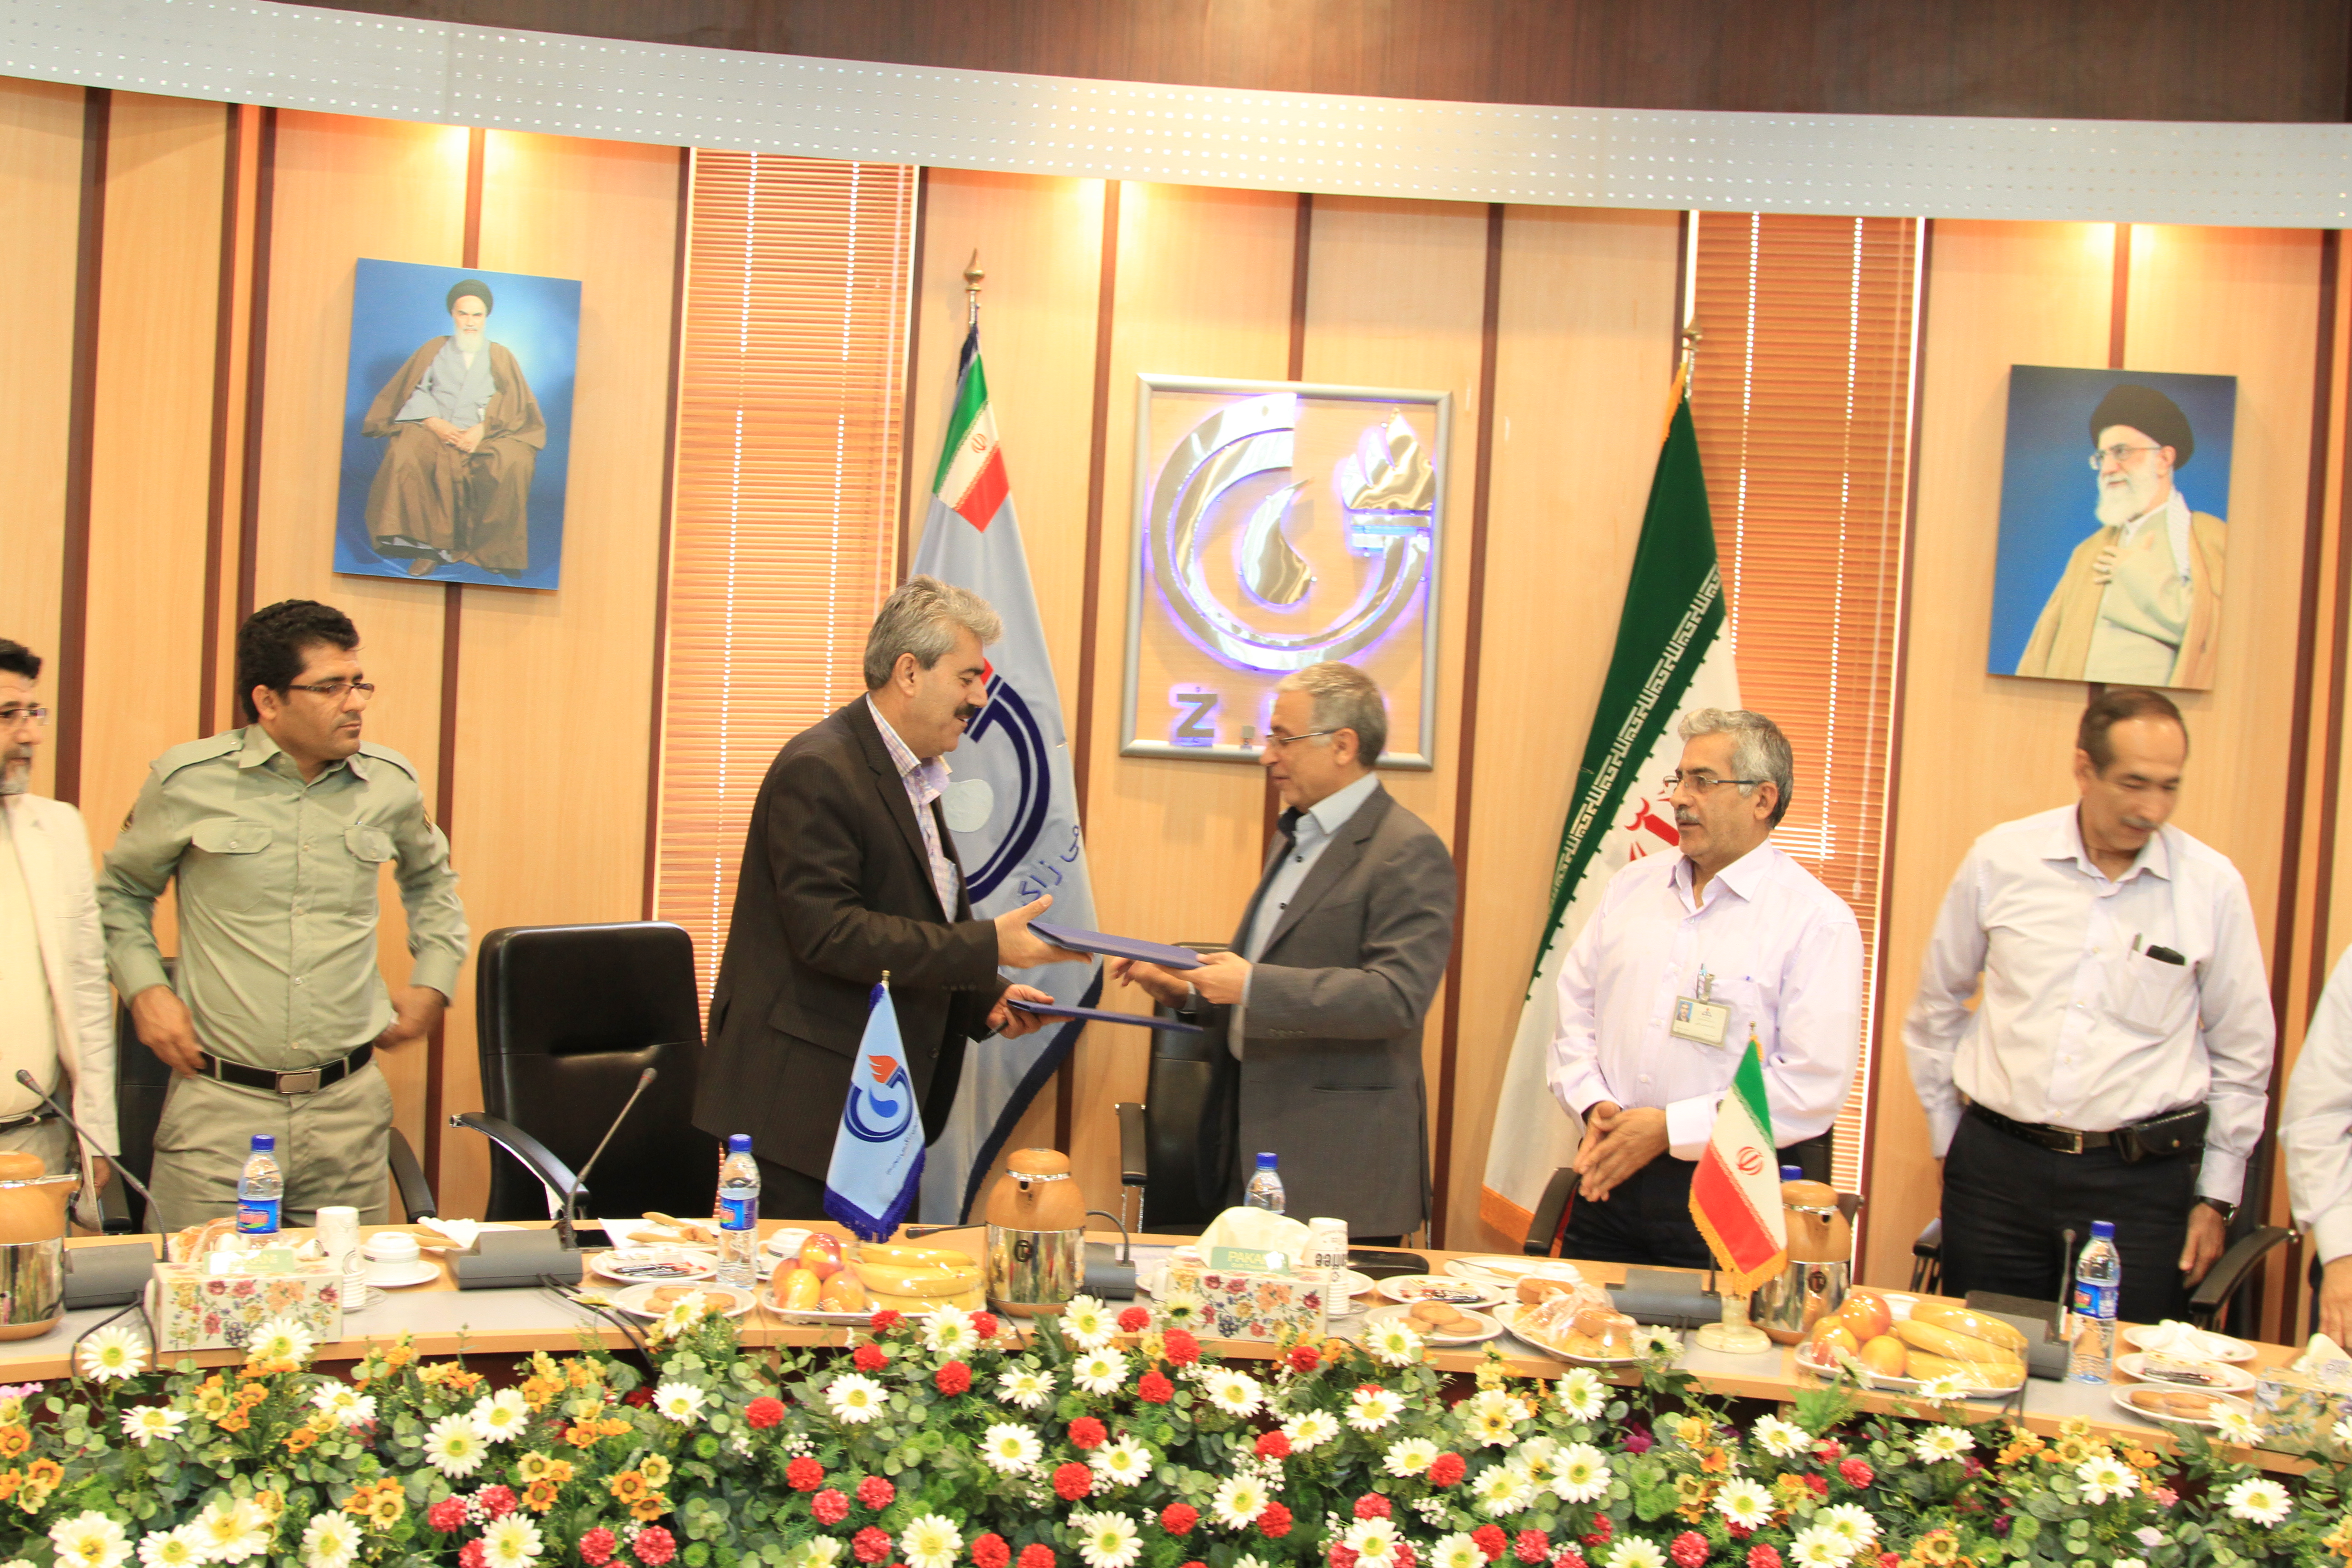 شرکت پتروشیمی زاگرس و محیط زیست استان بوشهر تفاهم نامه همکاری امضا کردند